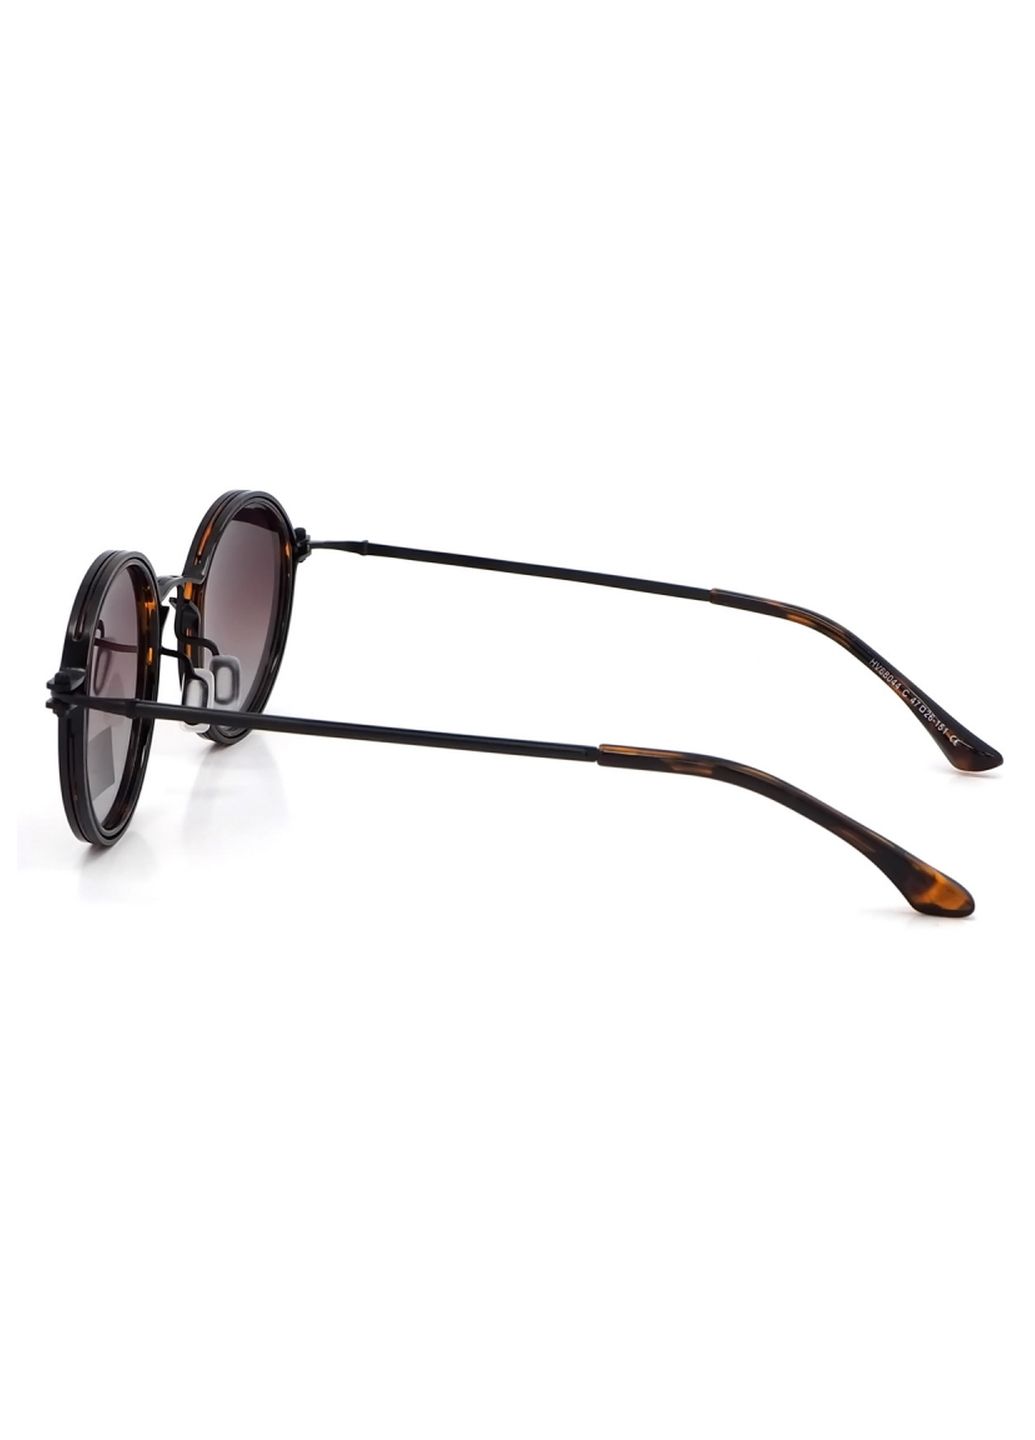 Купить Солнцезащитные очки c поляризацией HAVVS HV68044 170008 - Коричневый в интернет-магазине